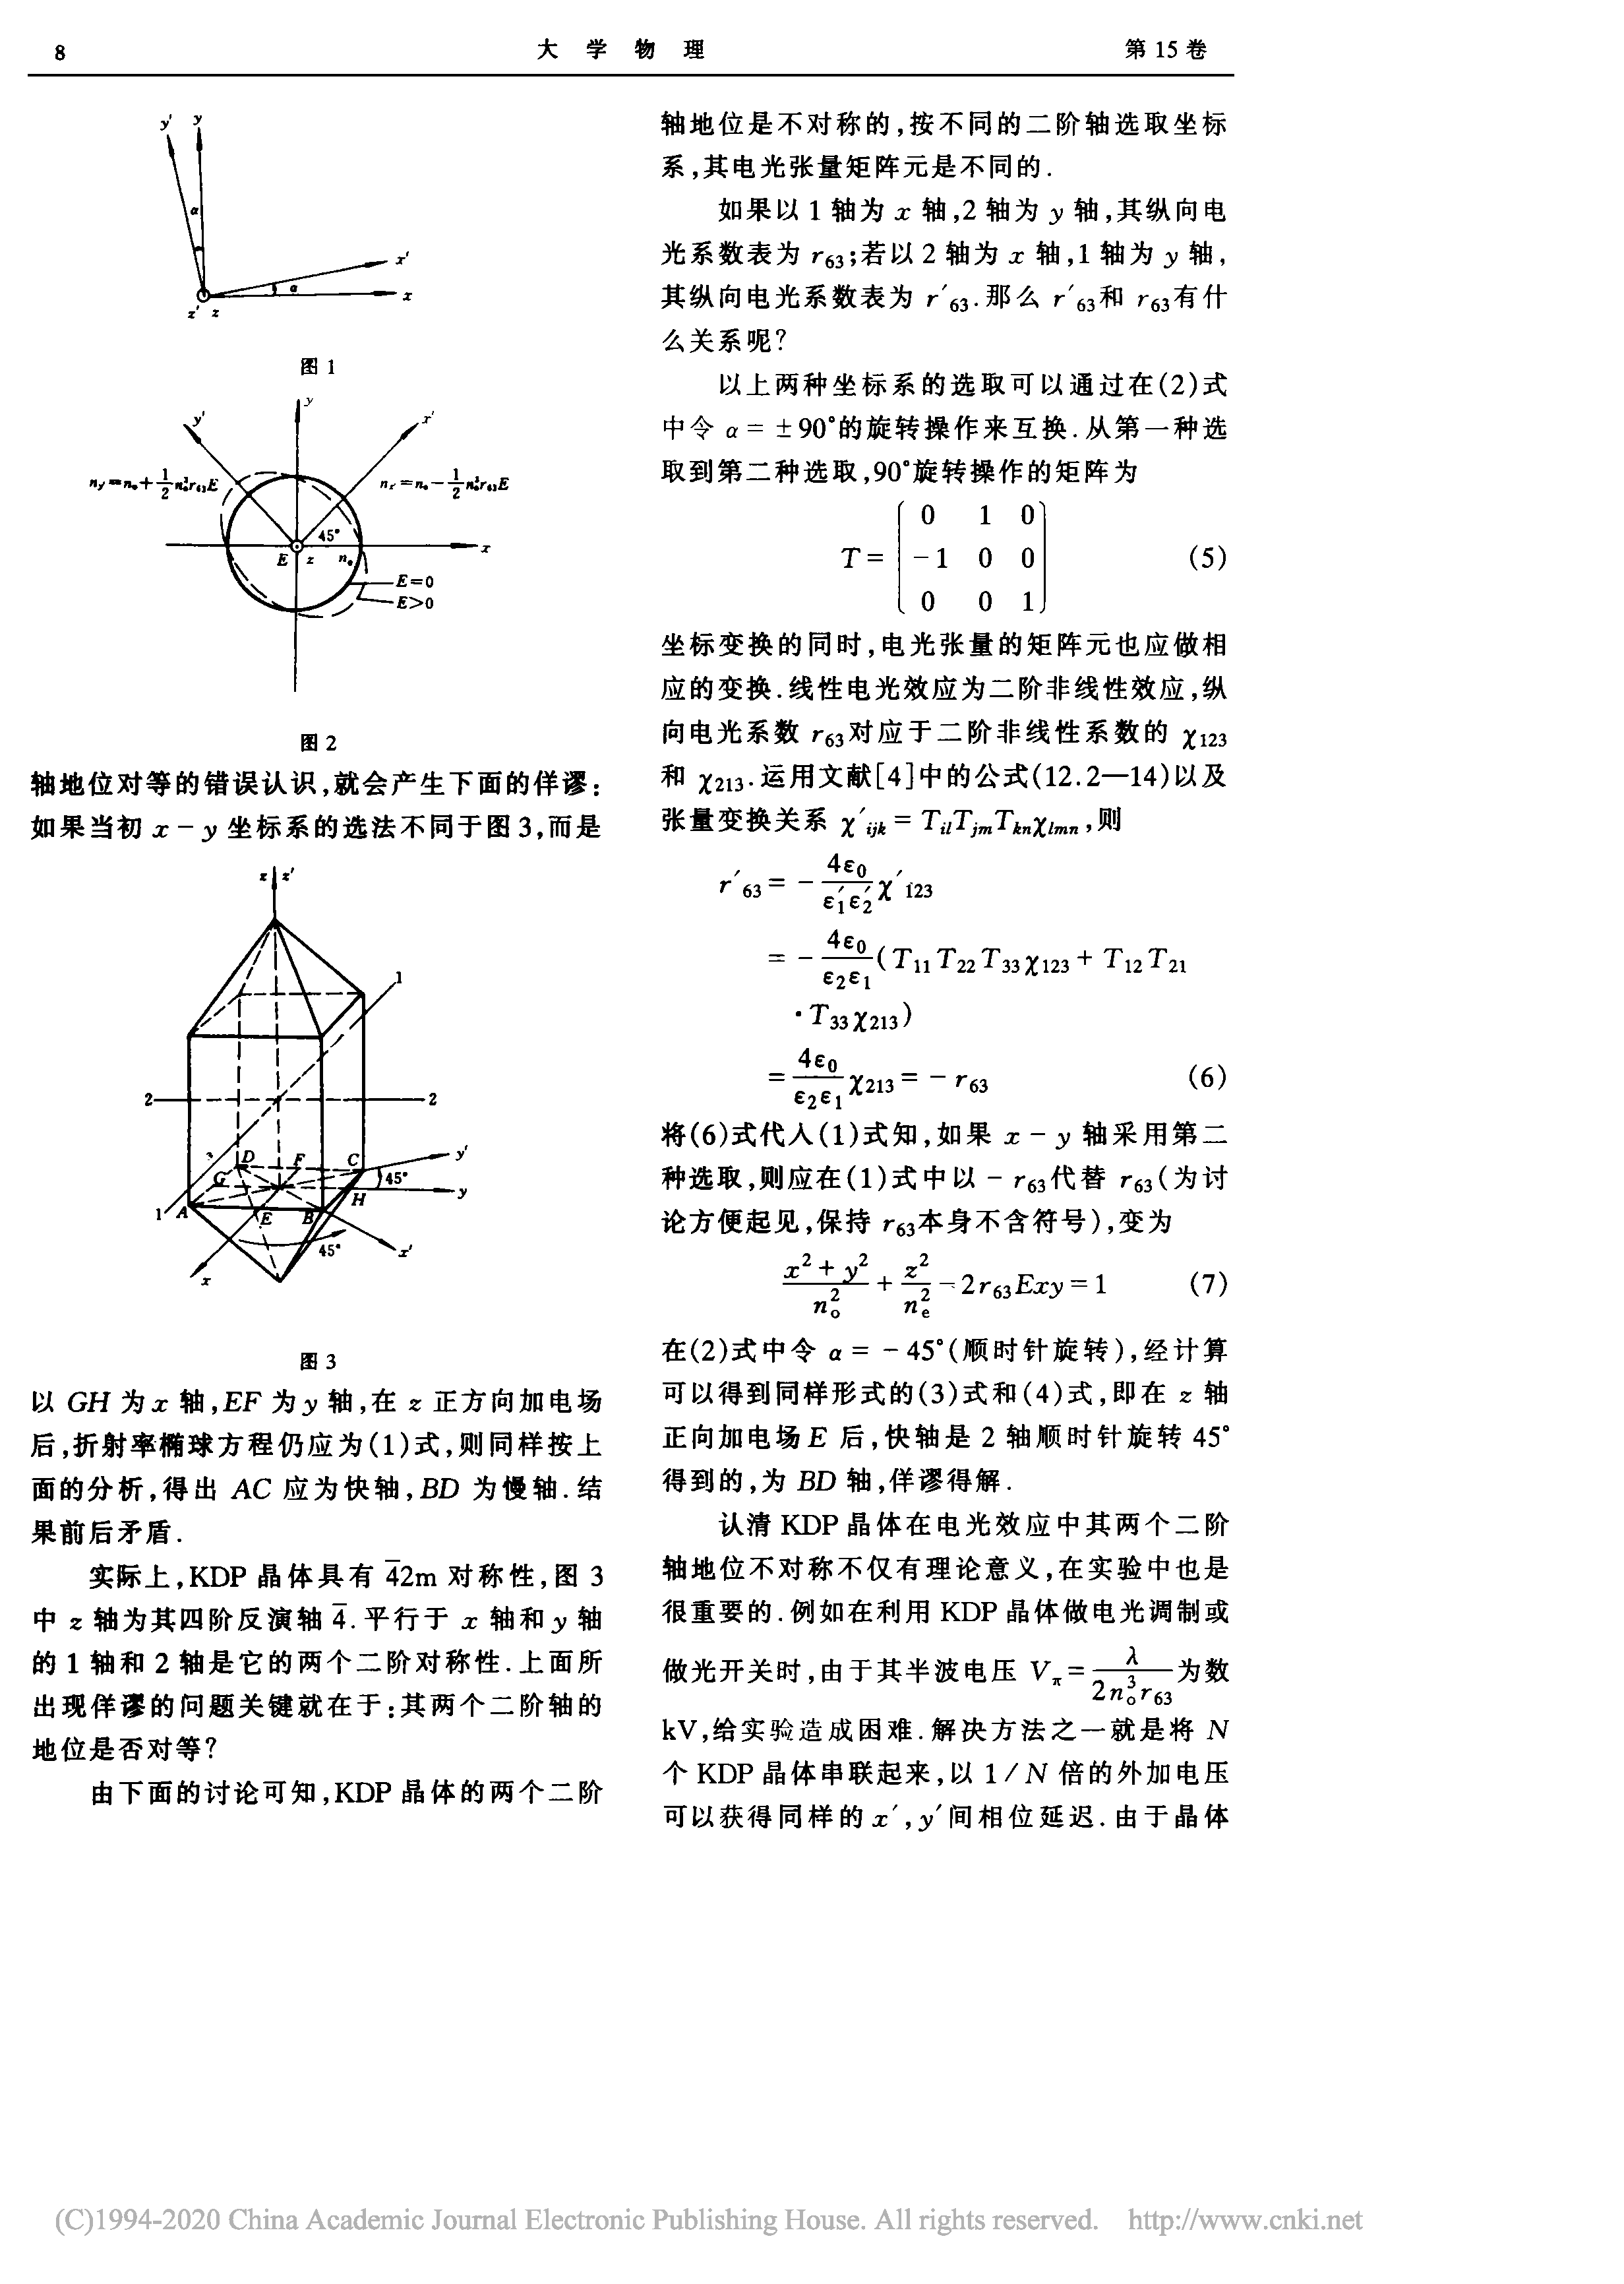 关于KDP晶体在电光效应中两个二阶轴对称性的讨论_张晓光_页面_2.png